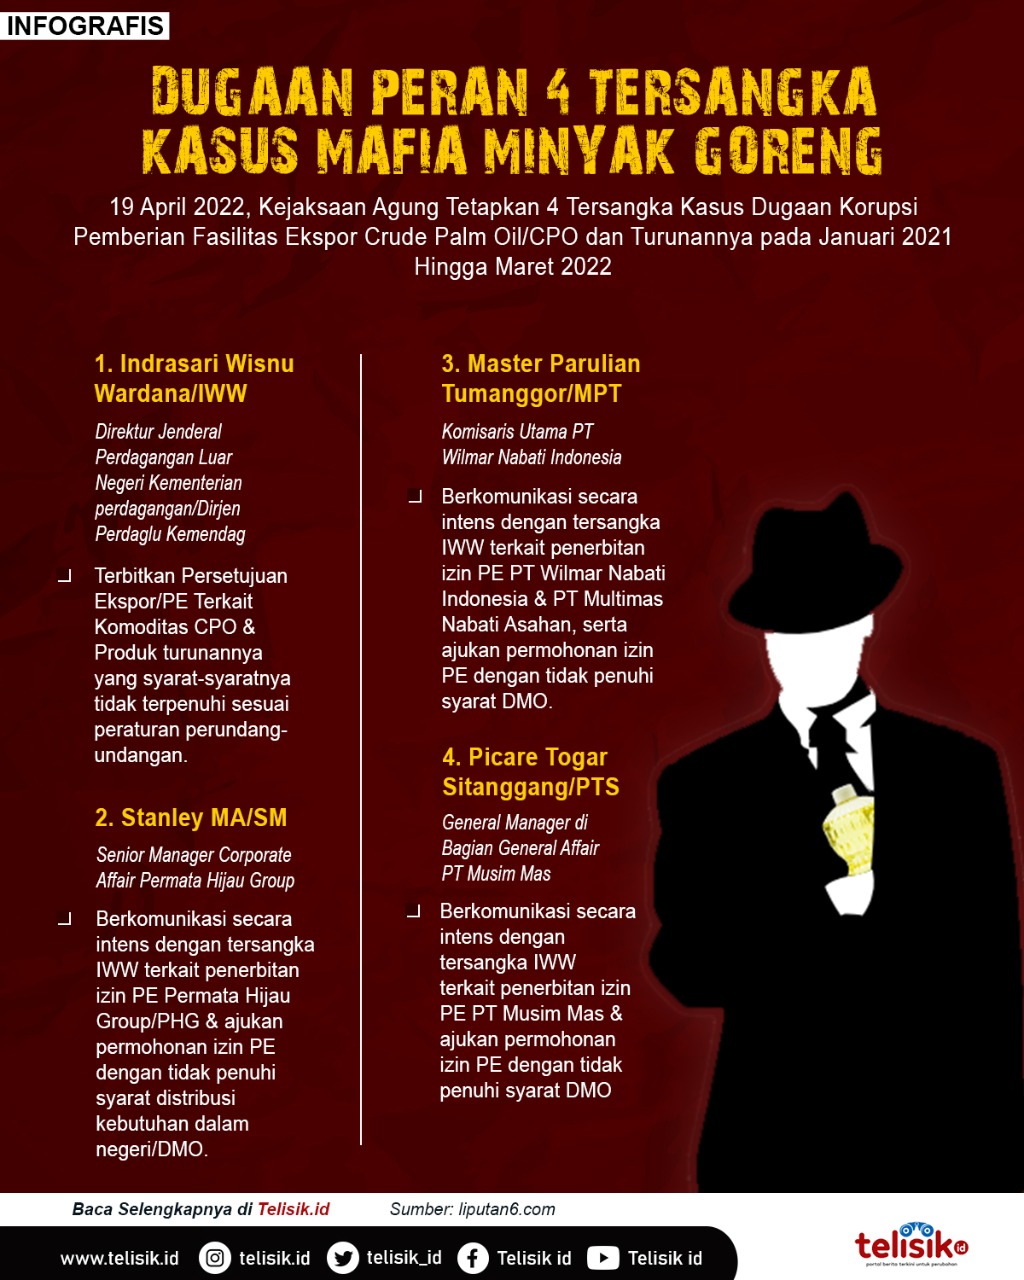 Infografis: Dugaan Peran 4 Tersangka Kasus Mafia Minyak goreng